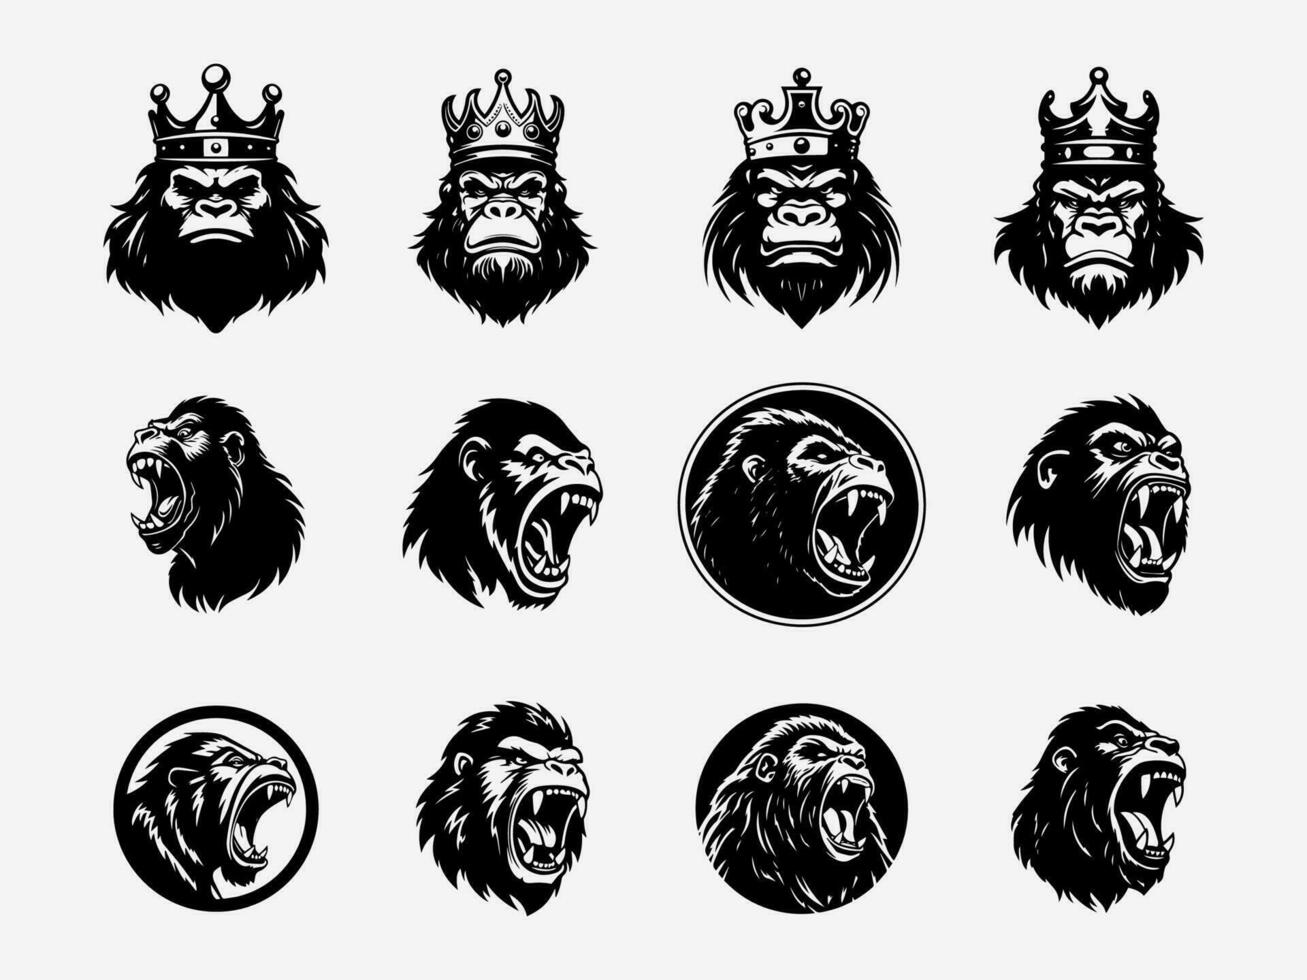 gorilla mano disegnato logo design illustrazione vettore